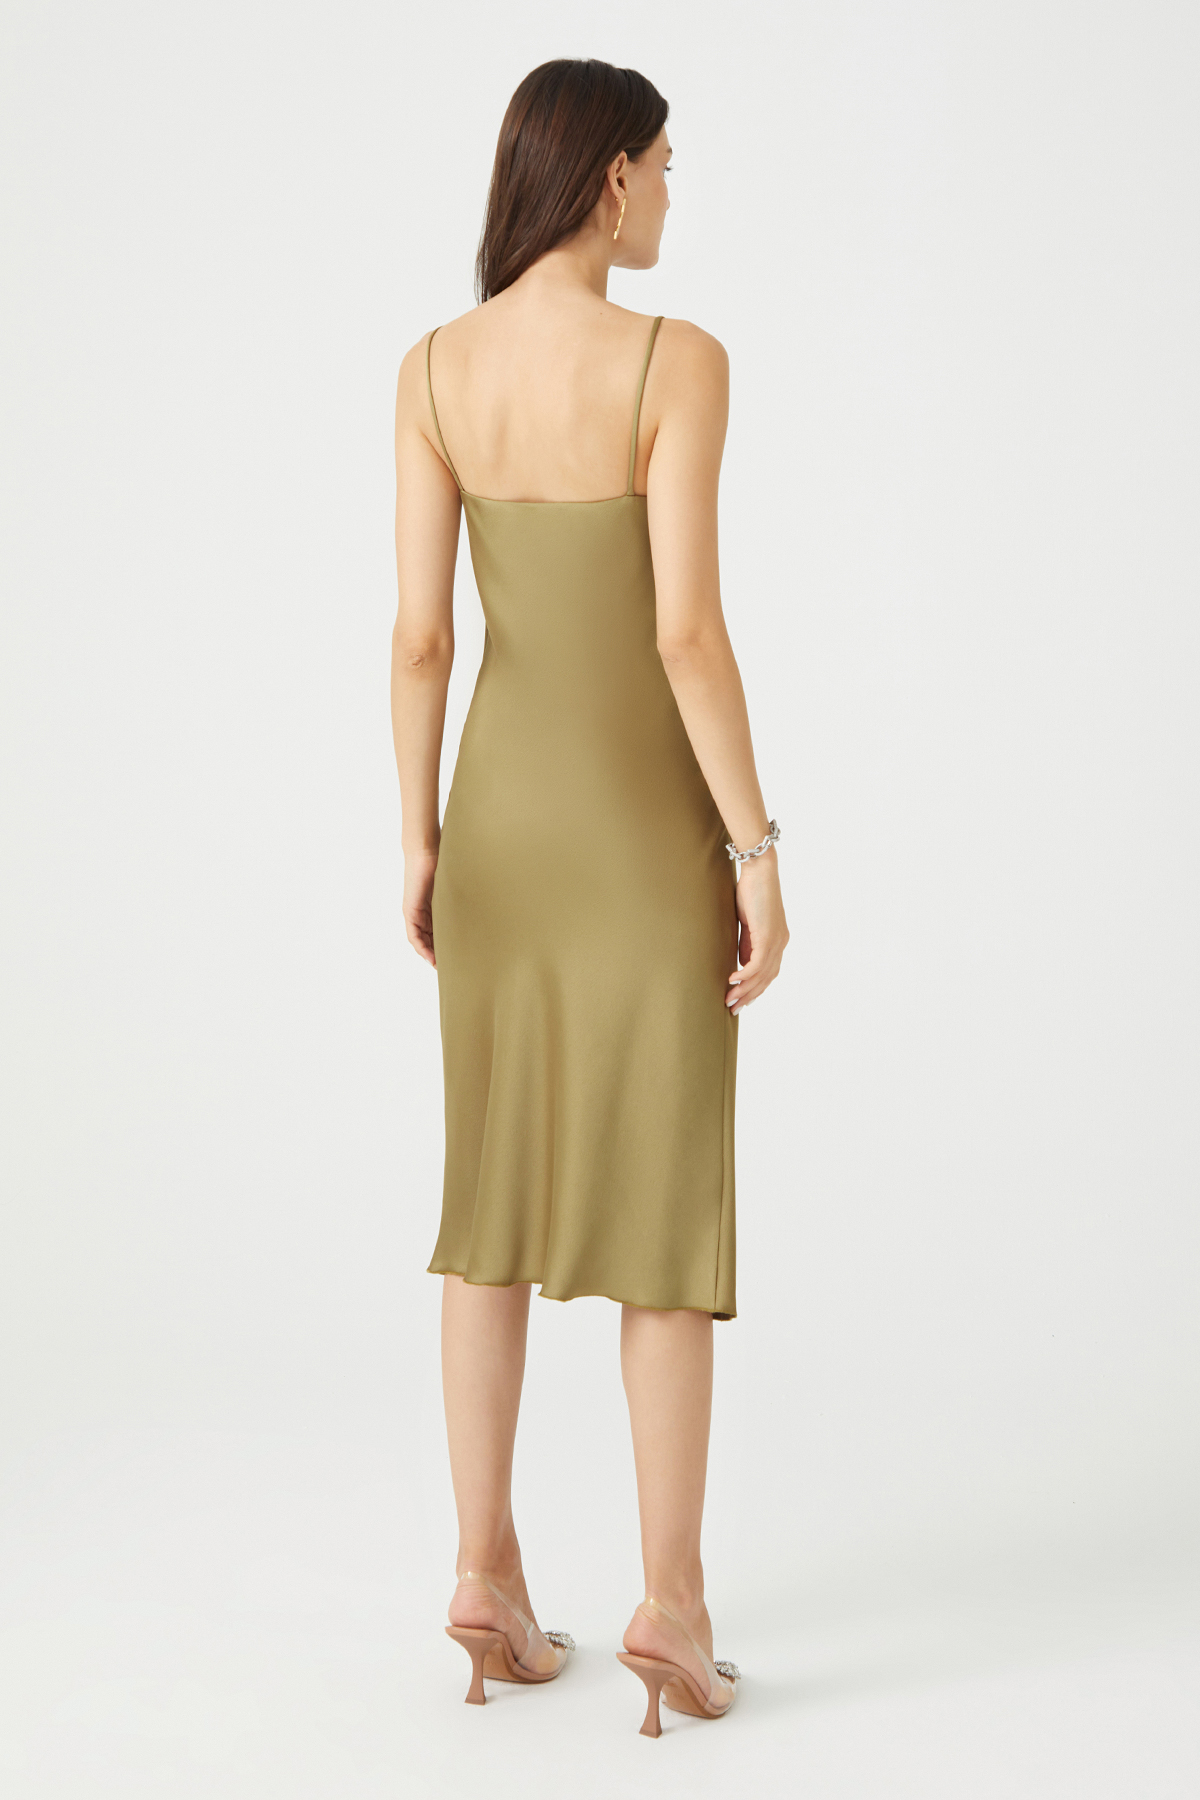 PAMELA Slit Detailed Satin Green Slip Dress